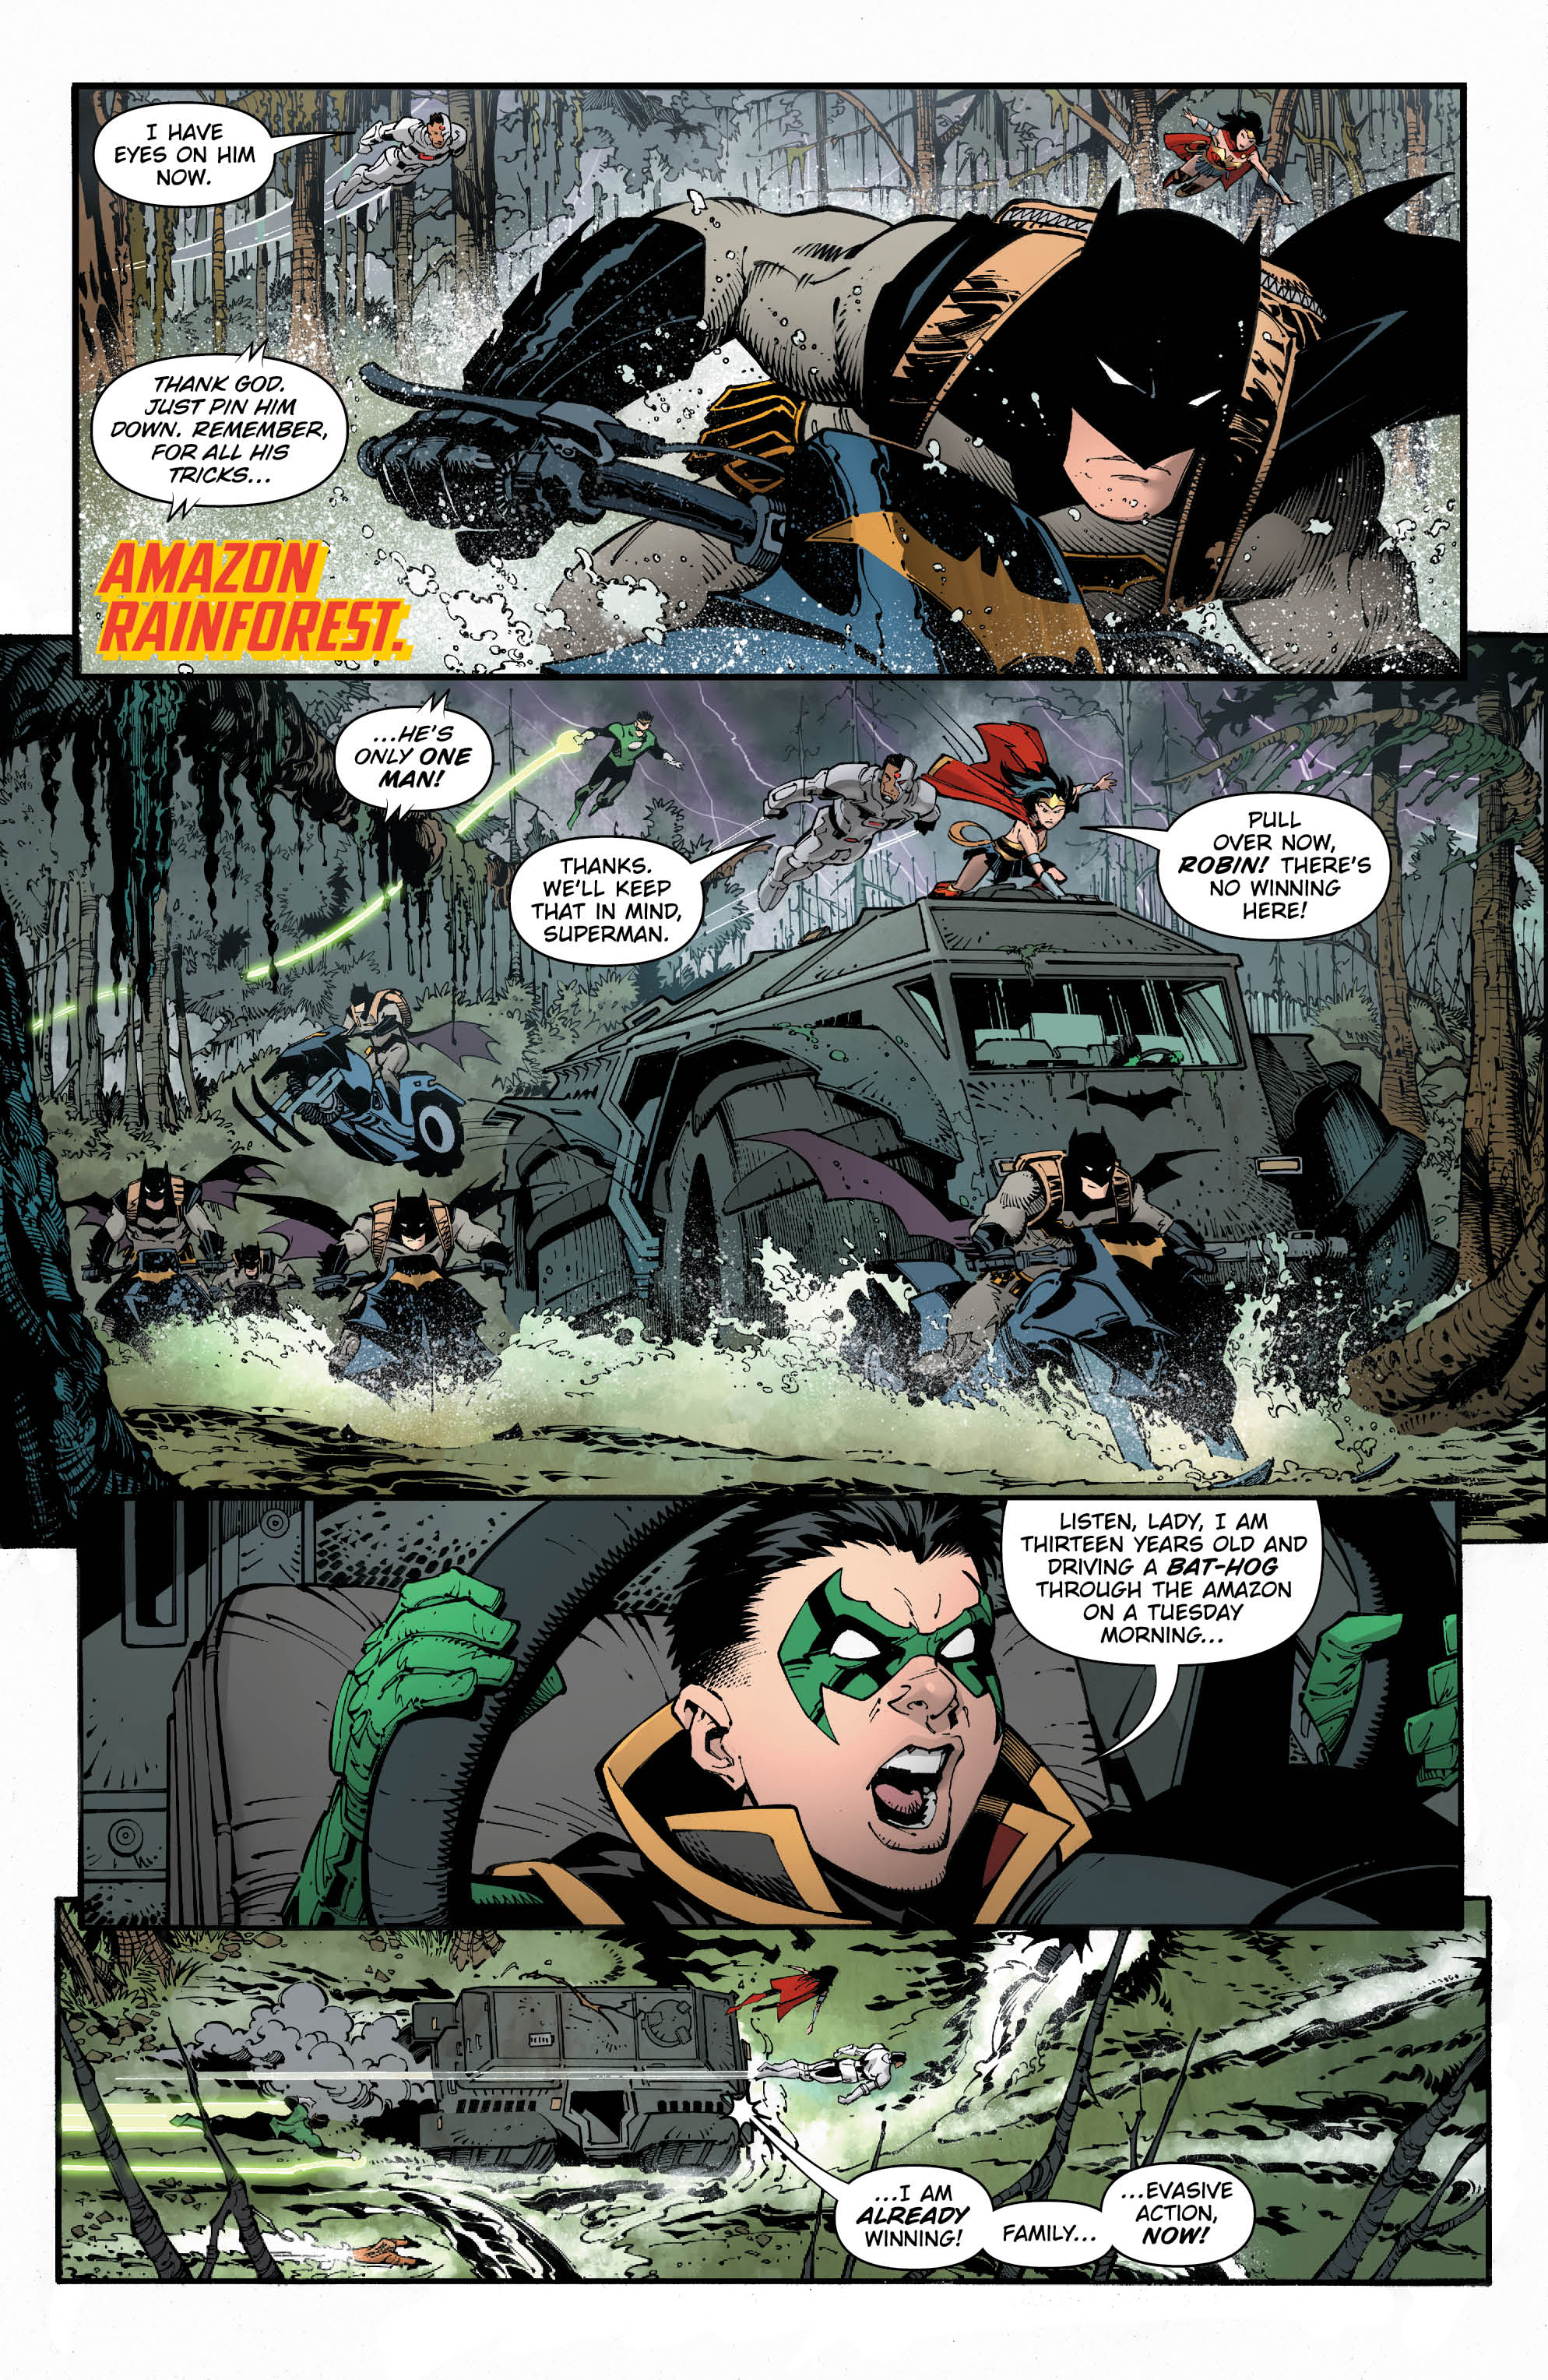 Metal 2 - Page 3 - DC Comics News